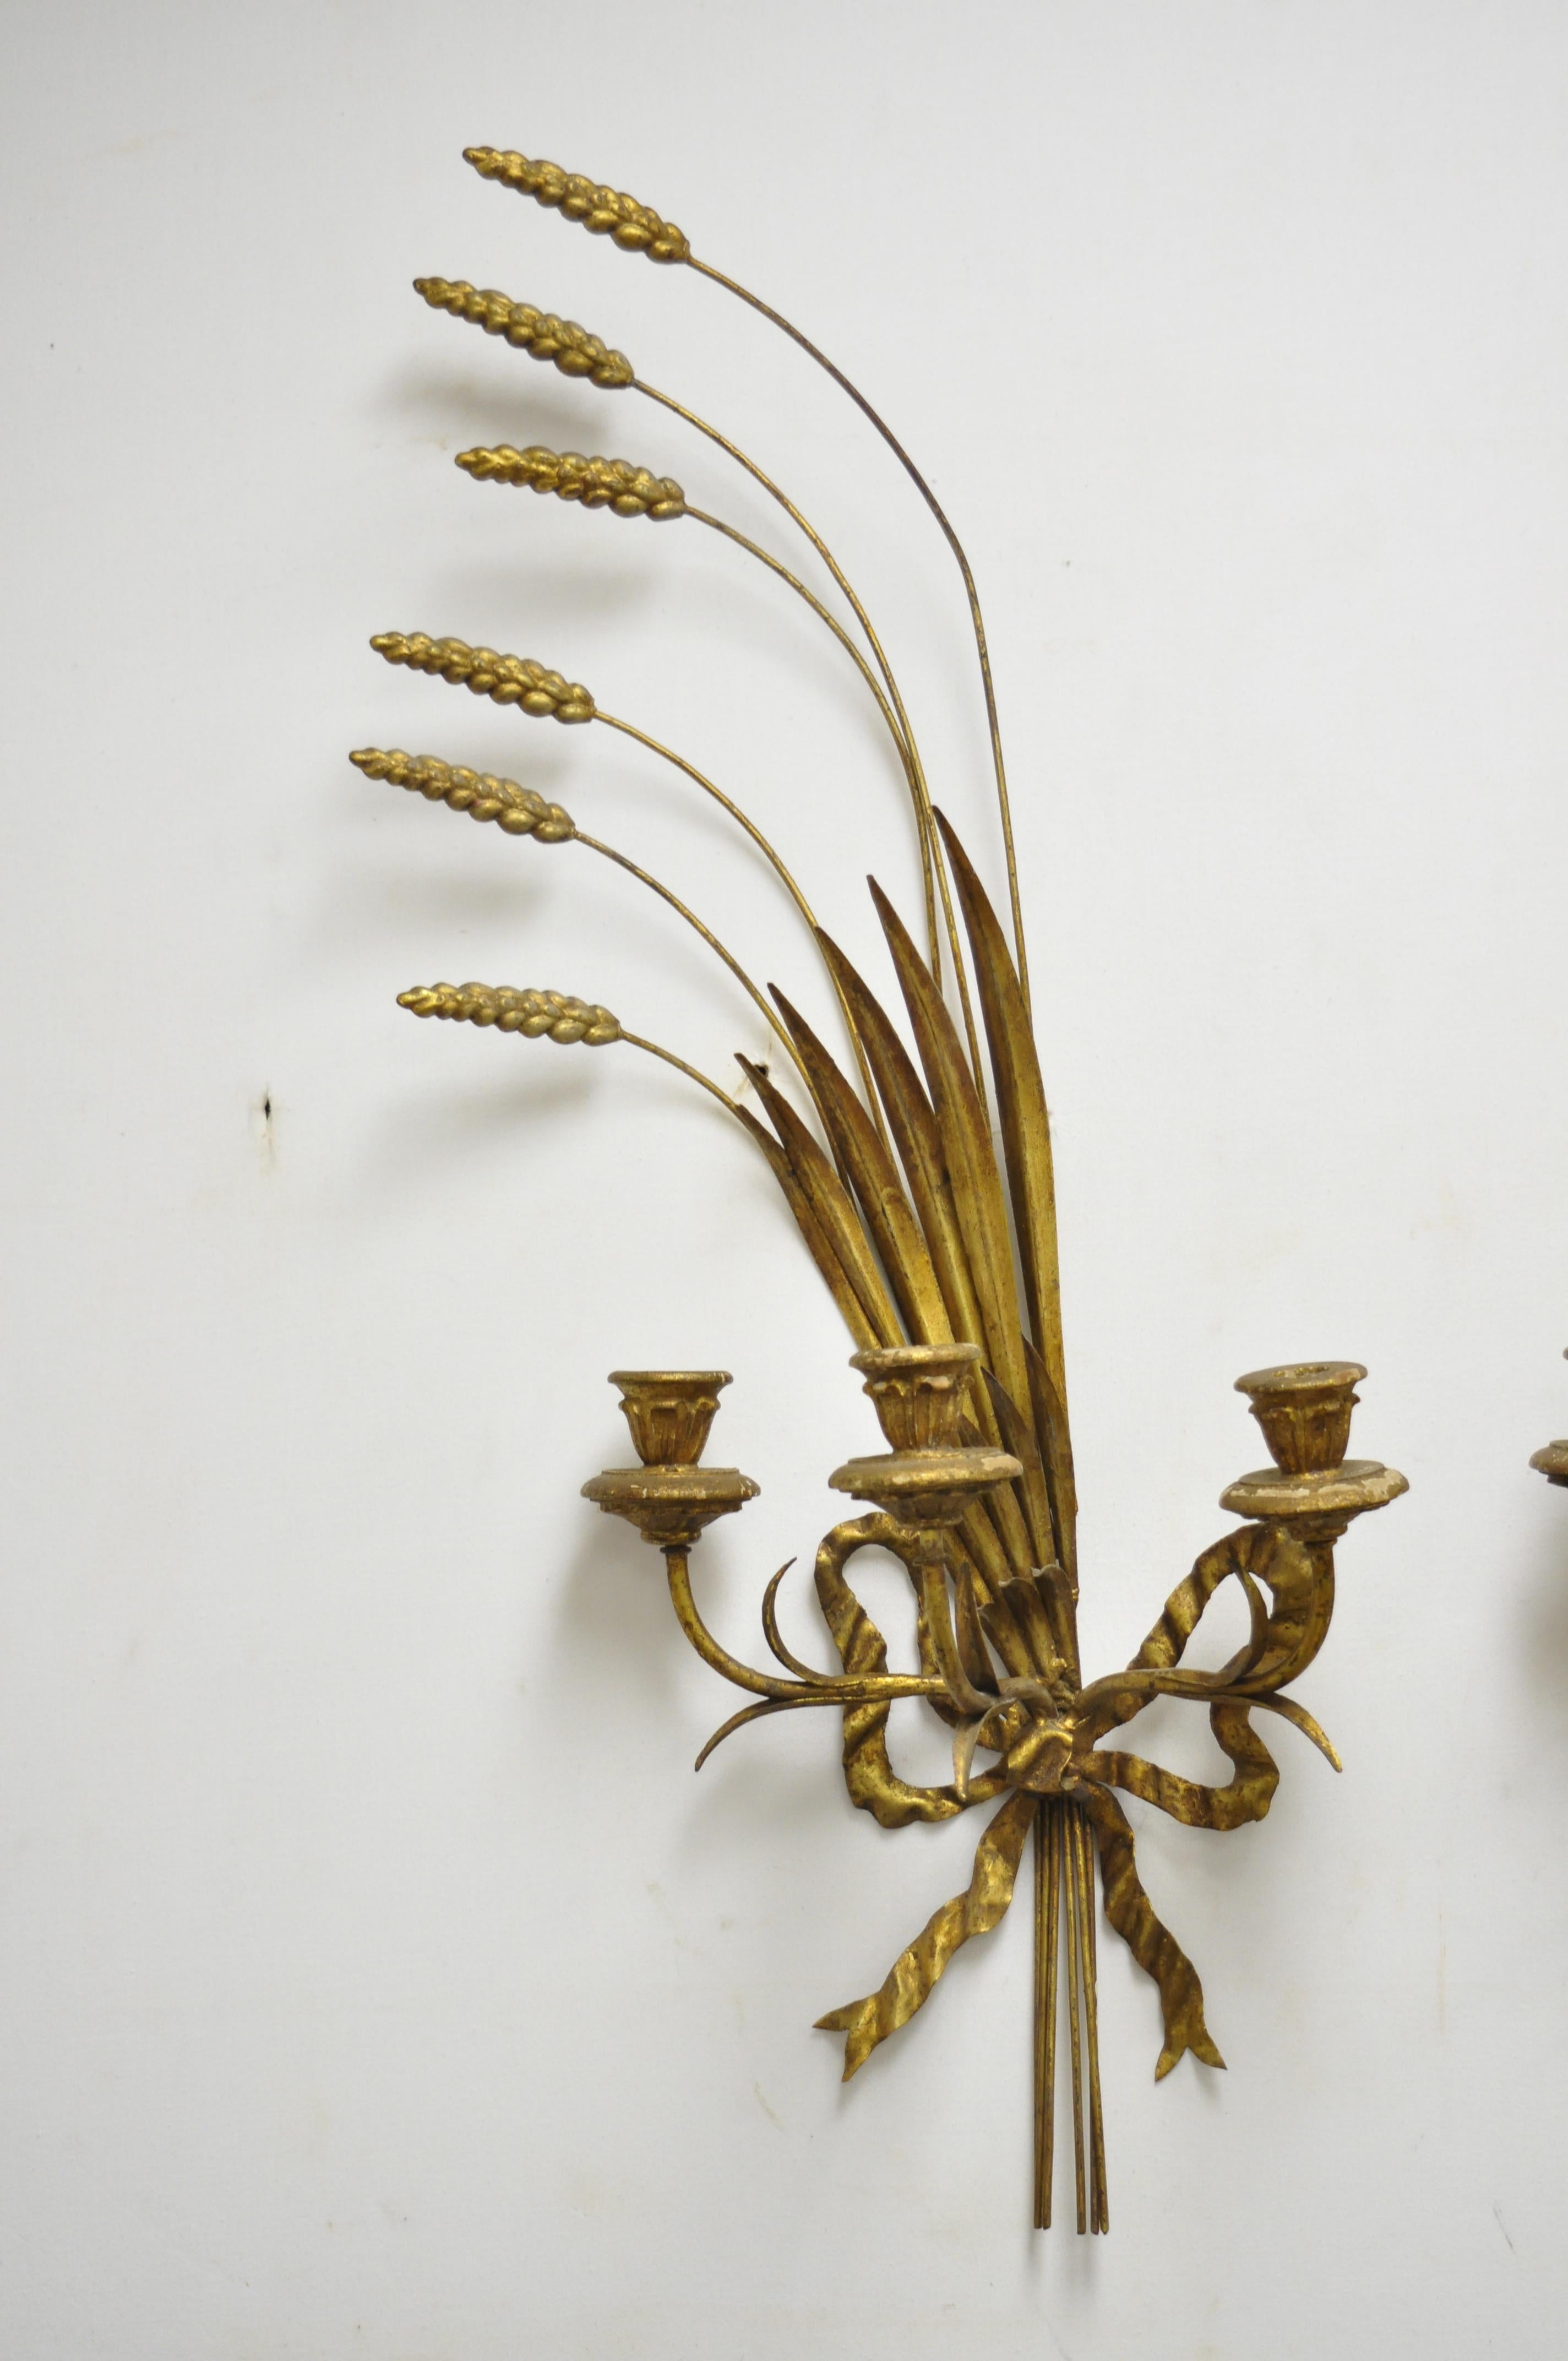 Appliques murales en forme de gerbe de blé en fer doré à l'or fin, Vintage Italian Hollywood Regency - une paire. L'article comprend 3 chandeliers en bois sculpté par applique, cadres en fer, détails d'arc et de gerbe de blé, formes gauche et